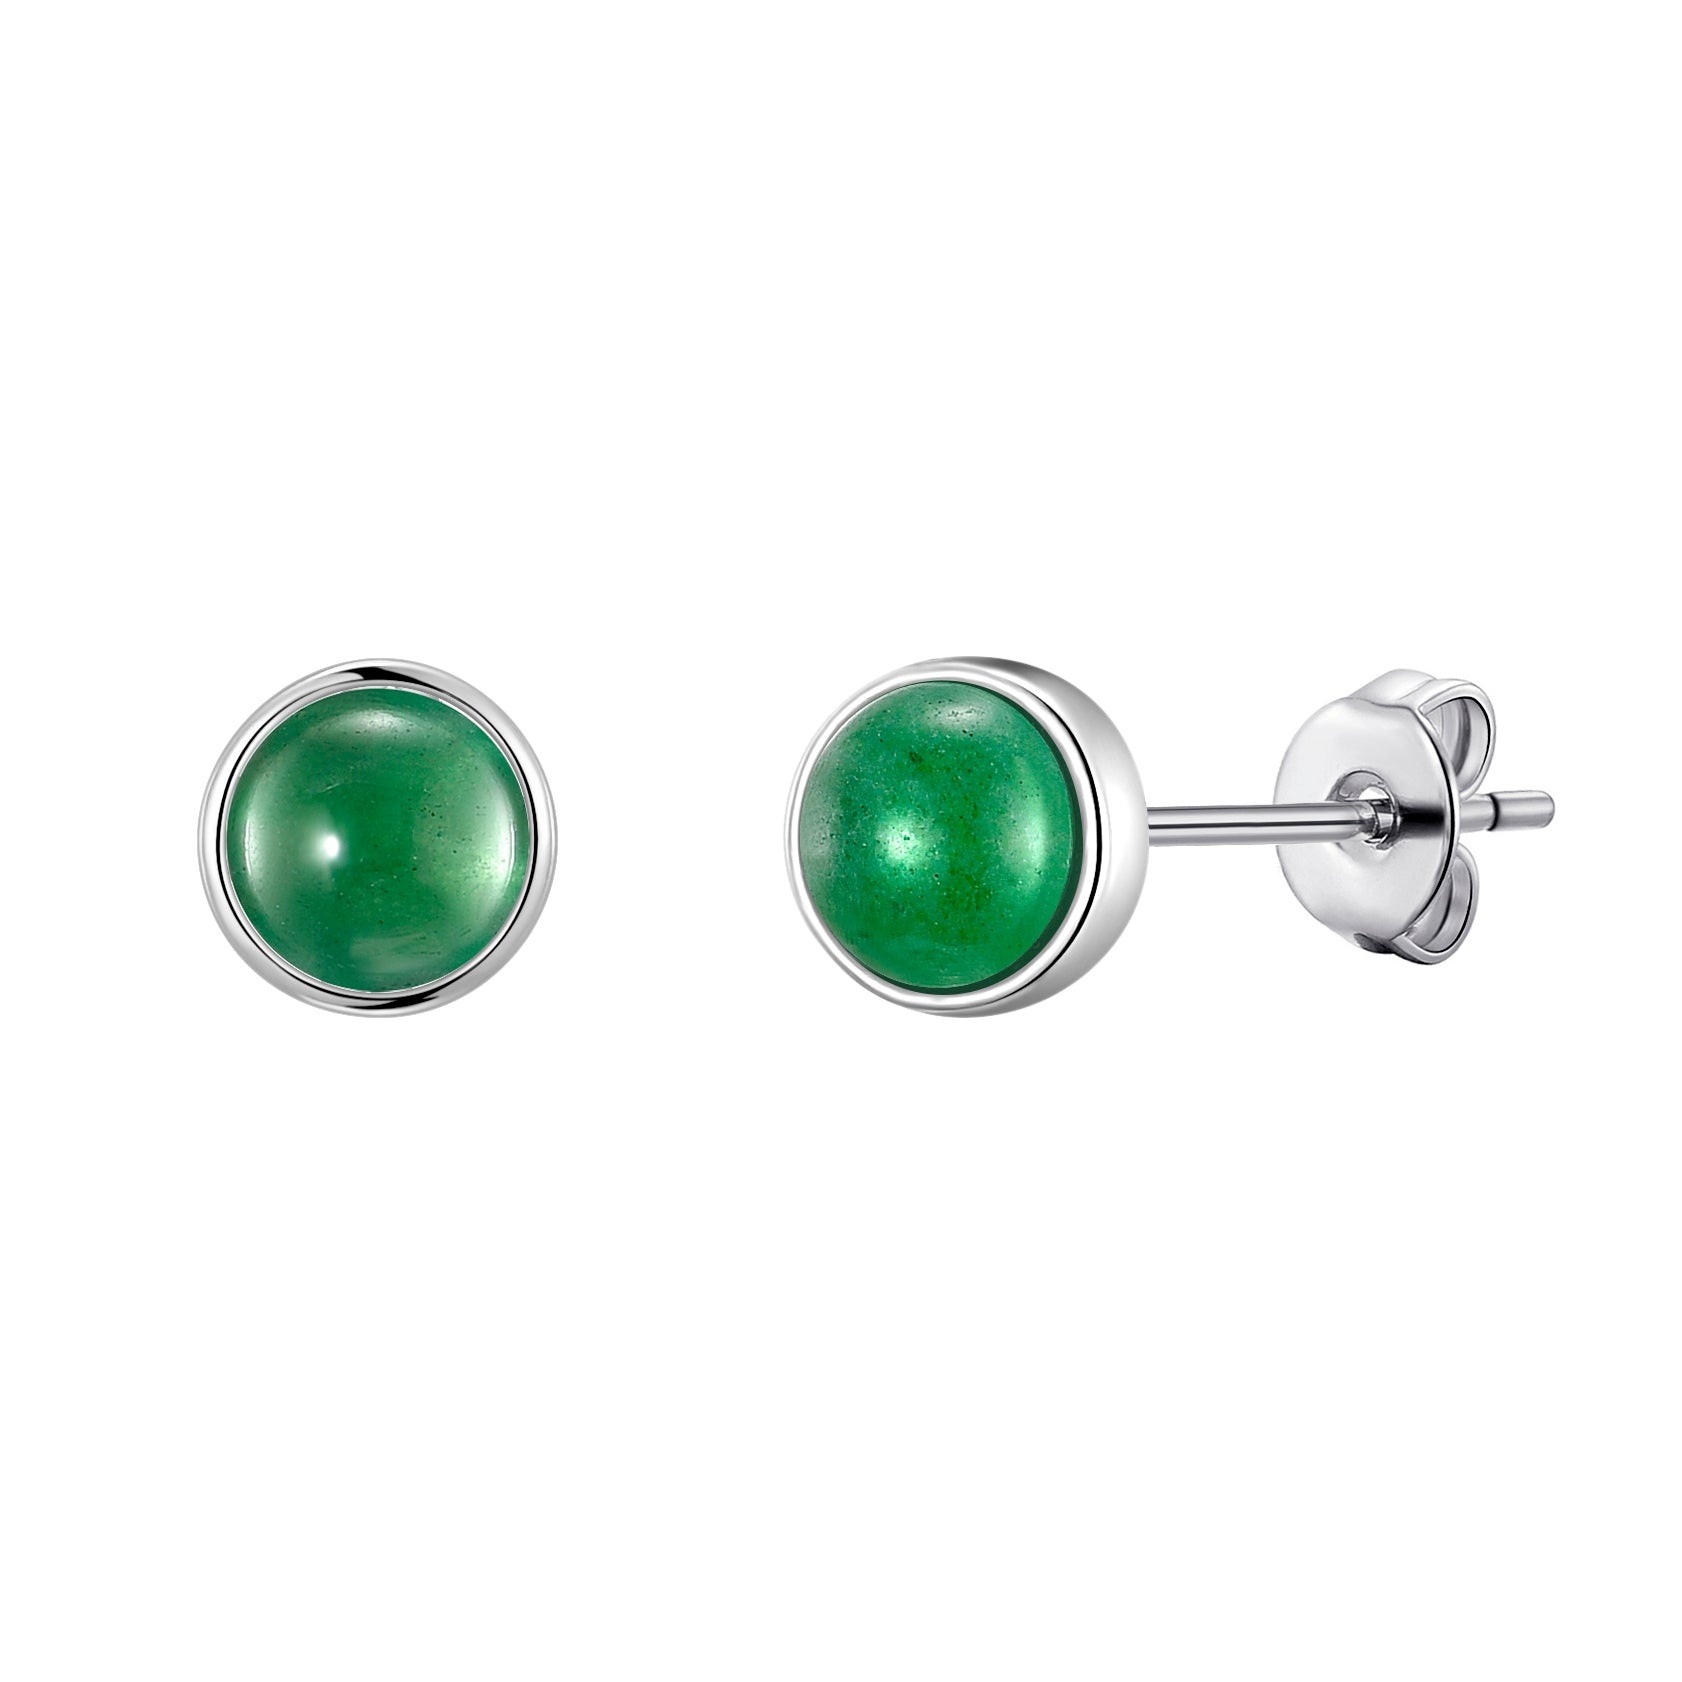 Green Aventurine Stud Earrings